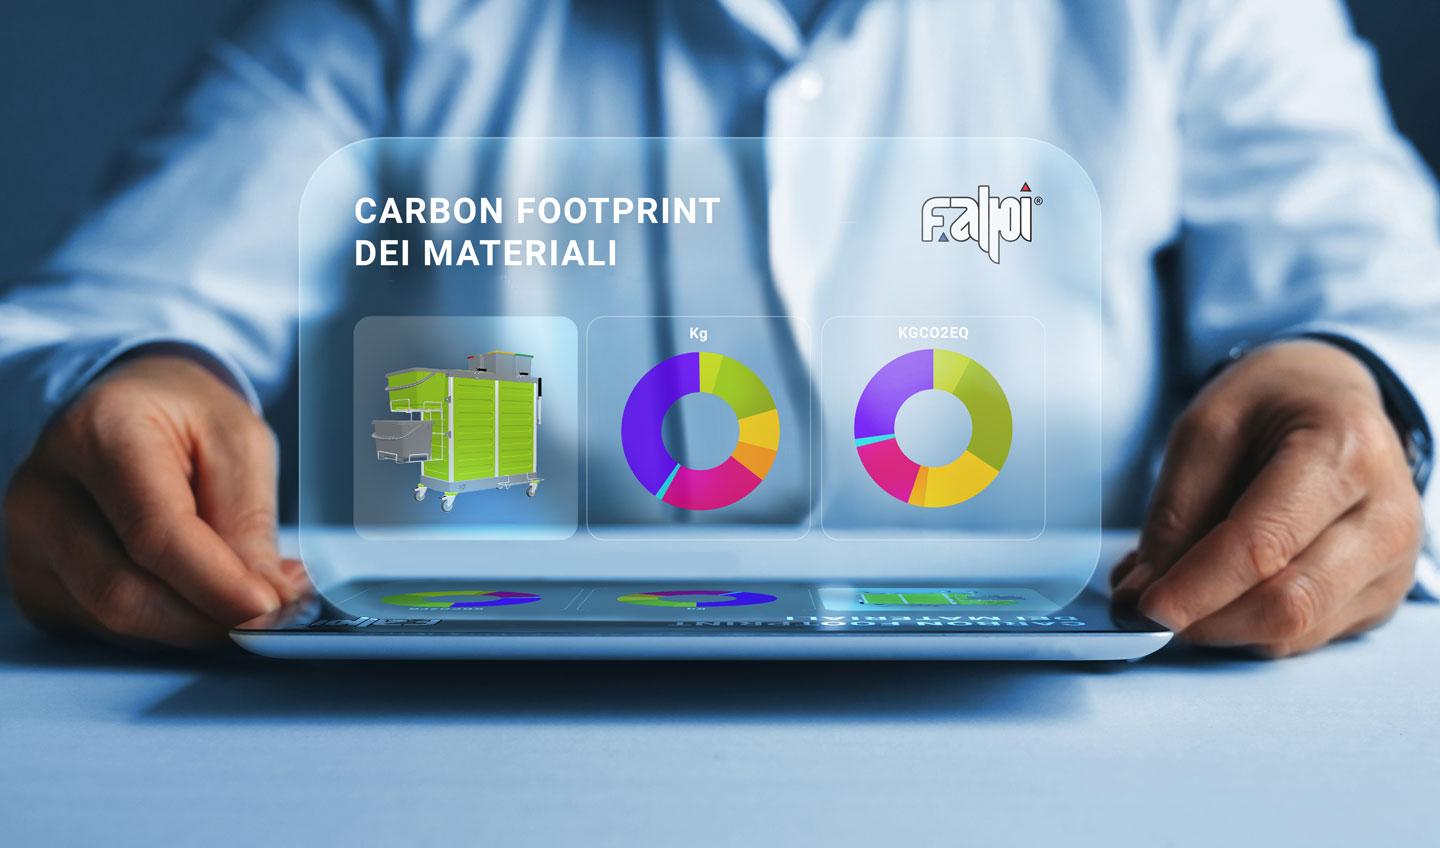 Falpi Carbon Footprint Calculator 